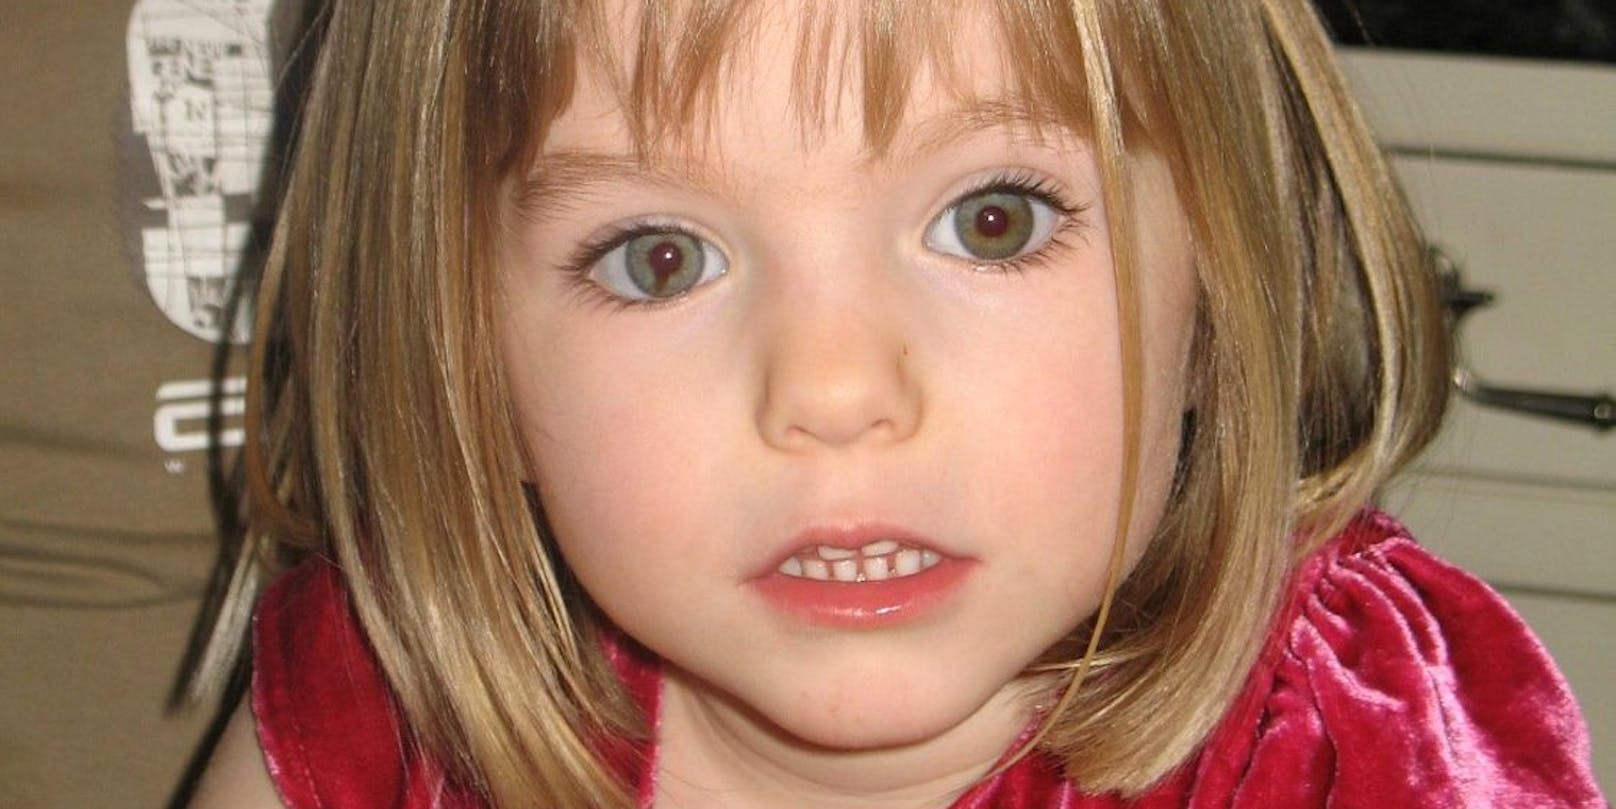 Die kleine Maddie verschwand mit vier Jahren aus einer Ferienanlage in Portugal. Erst Jahre später ermittelt die Polizei einen Verdächtigen.